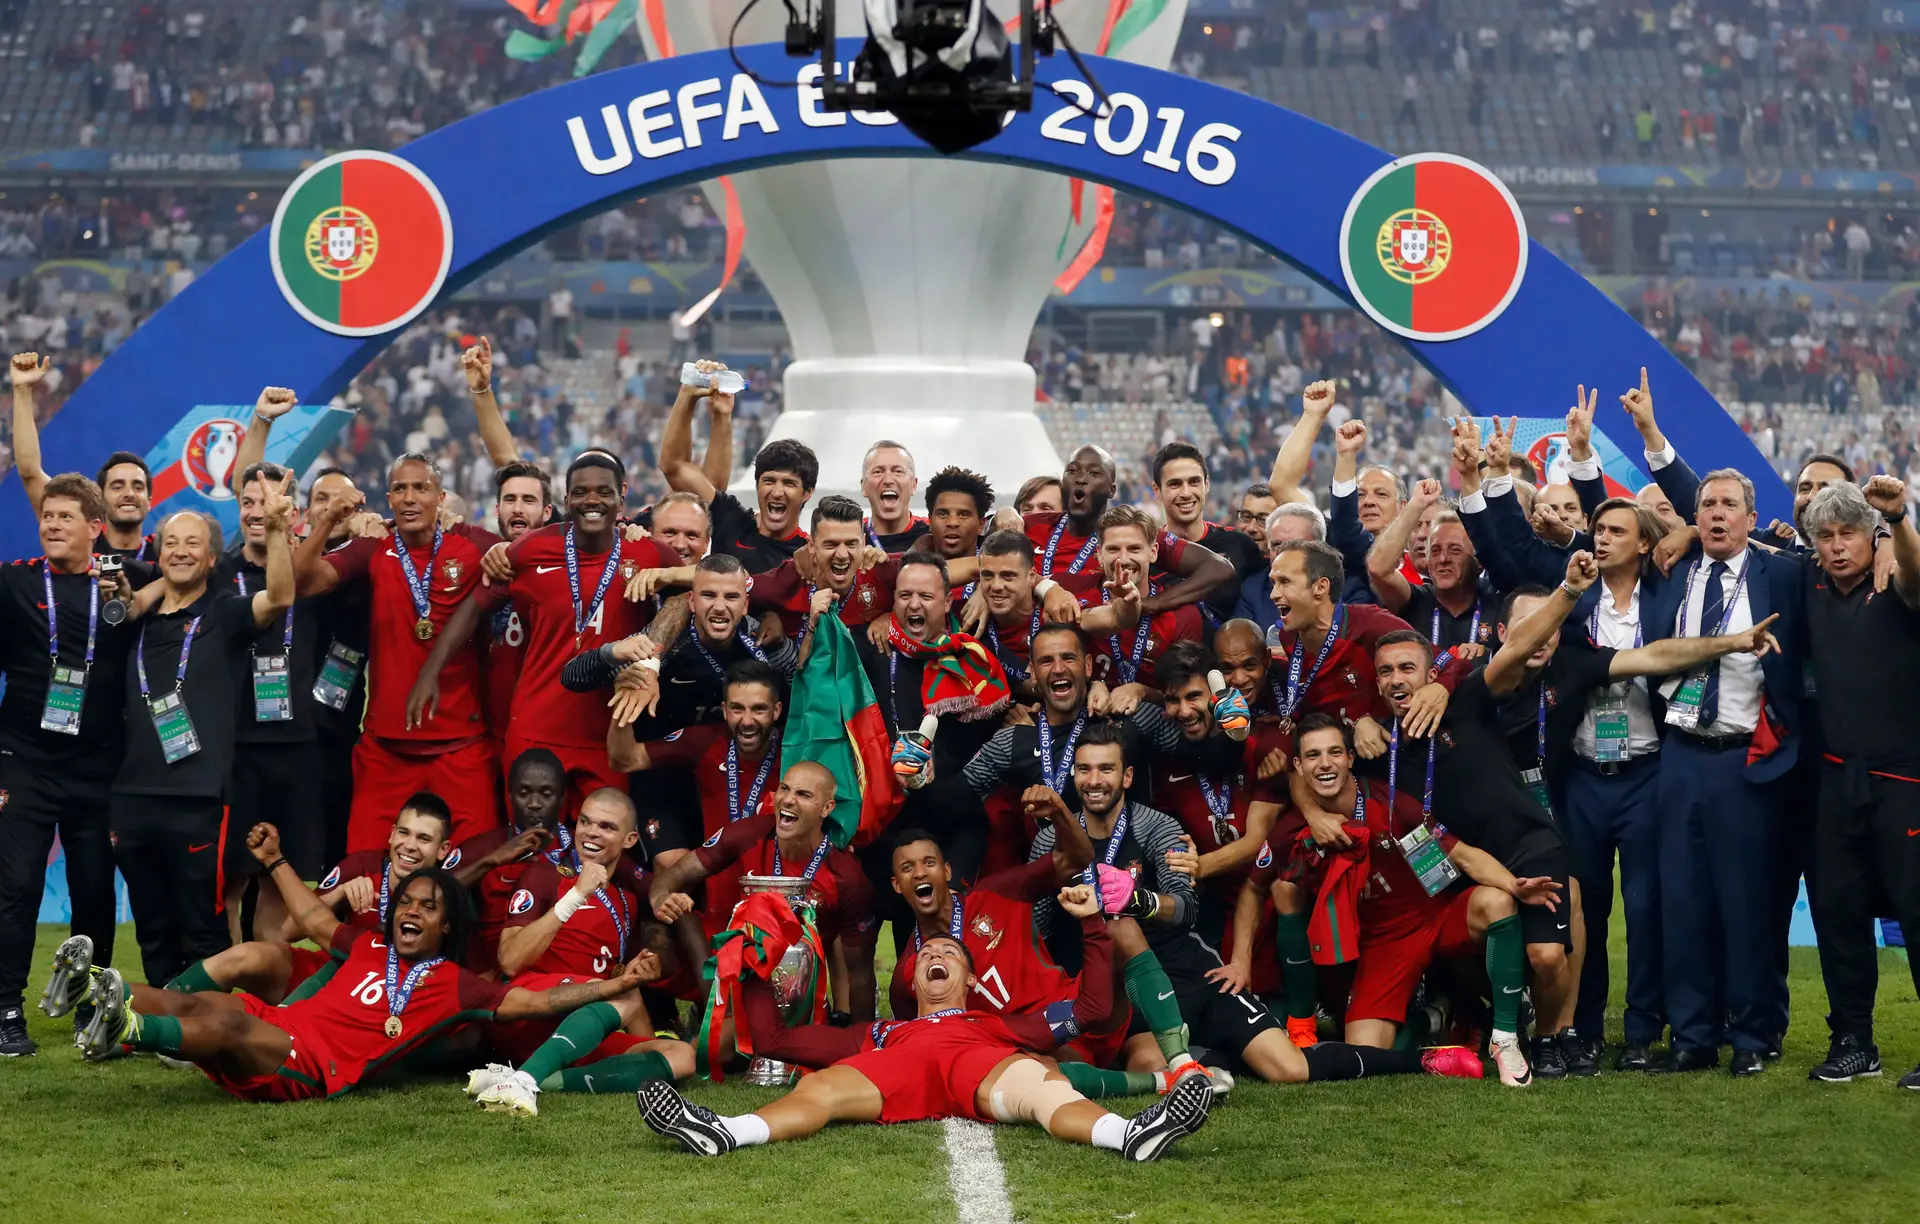 Seleções Imortais - Portugal 2016 - Imortais do Futebol